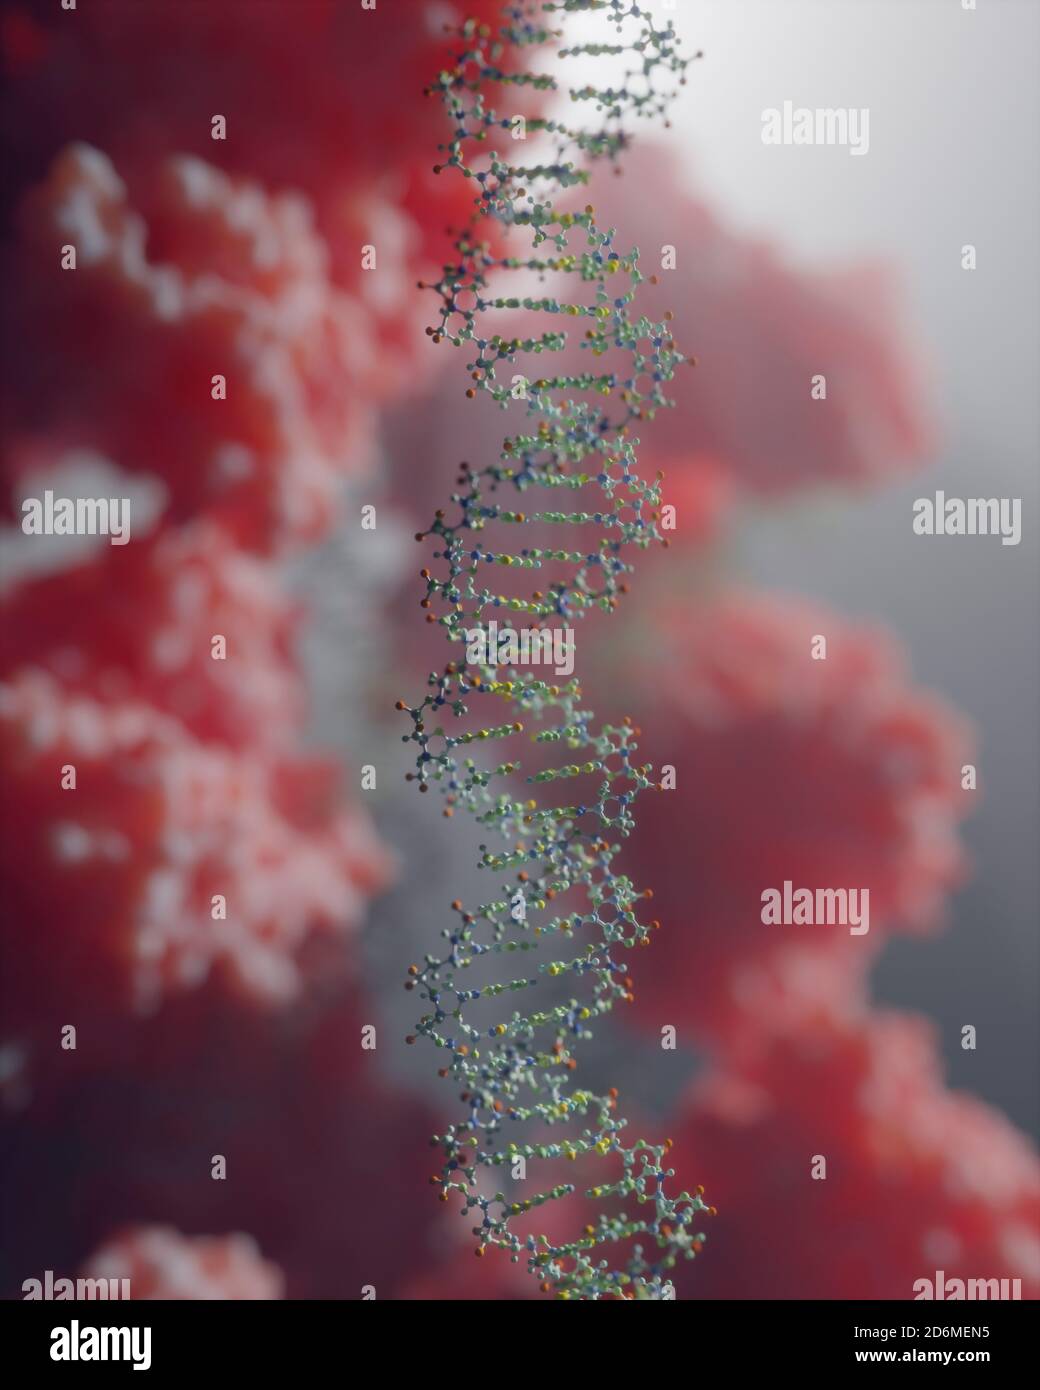 Il DNA, che porta istruzioni genetiche, risiede nel nucleo cellulare dove interagisce con varie proteine in vari processi, come la replicazione. Foto Stock